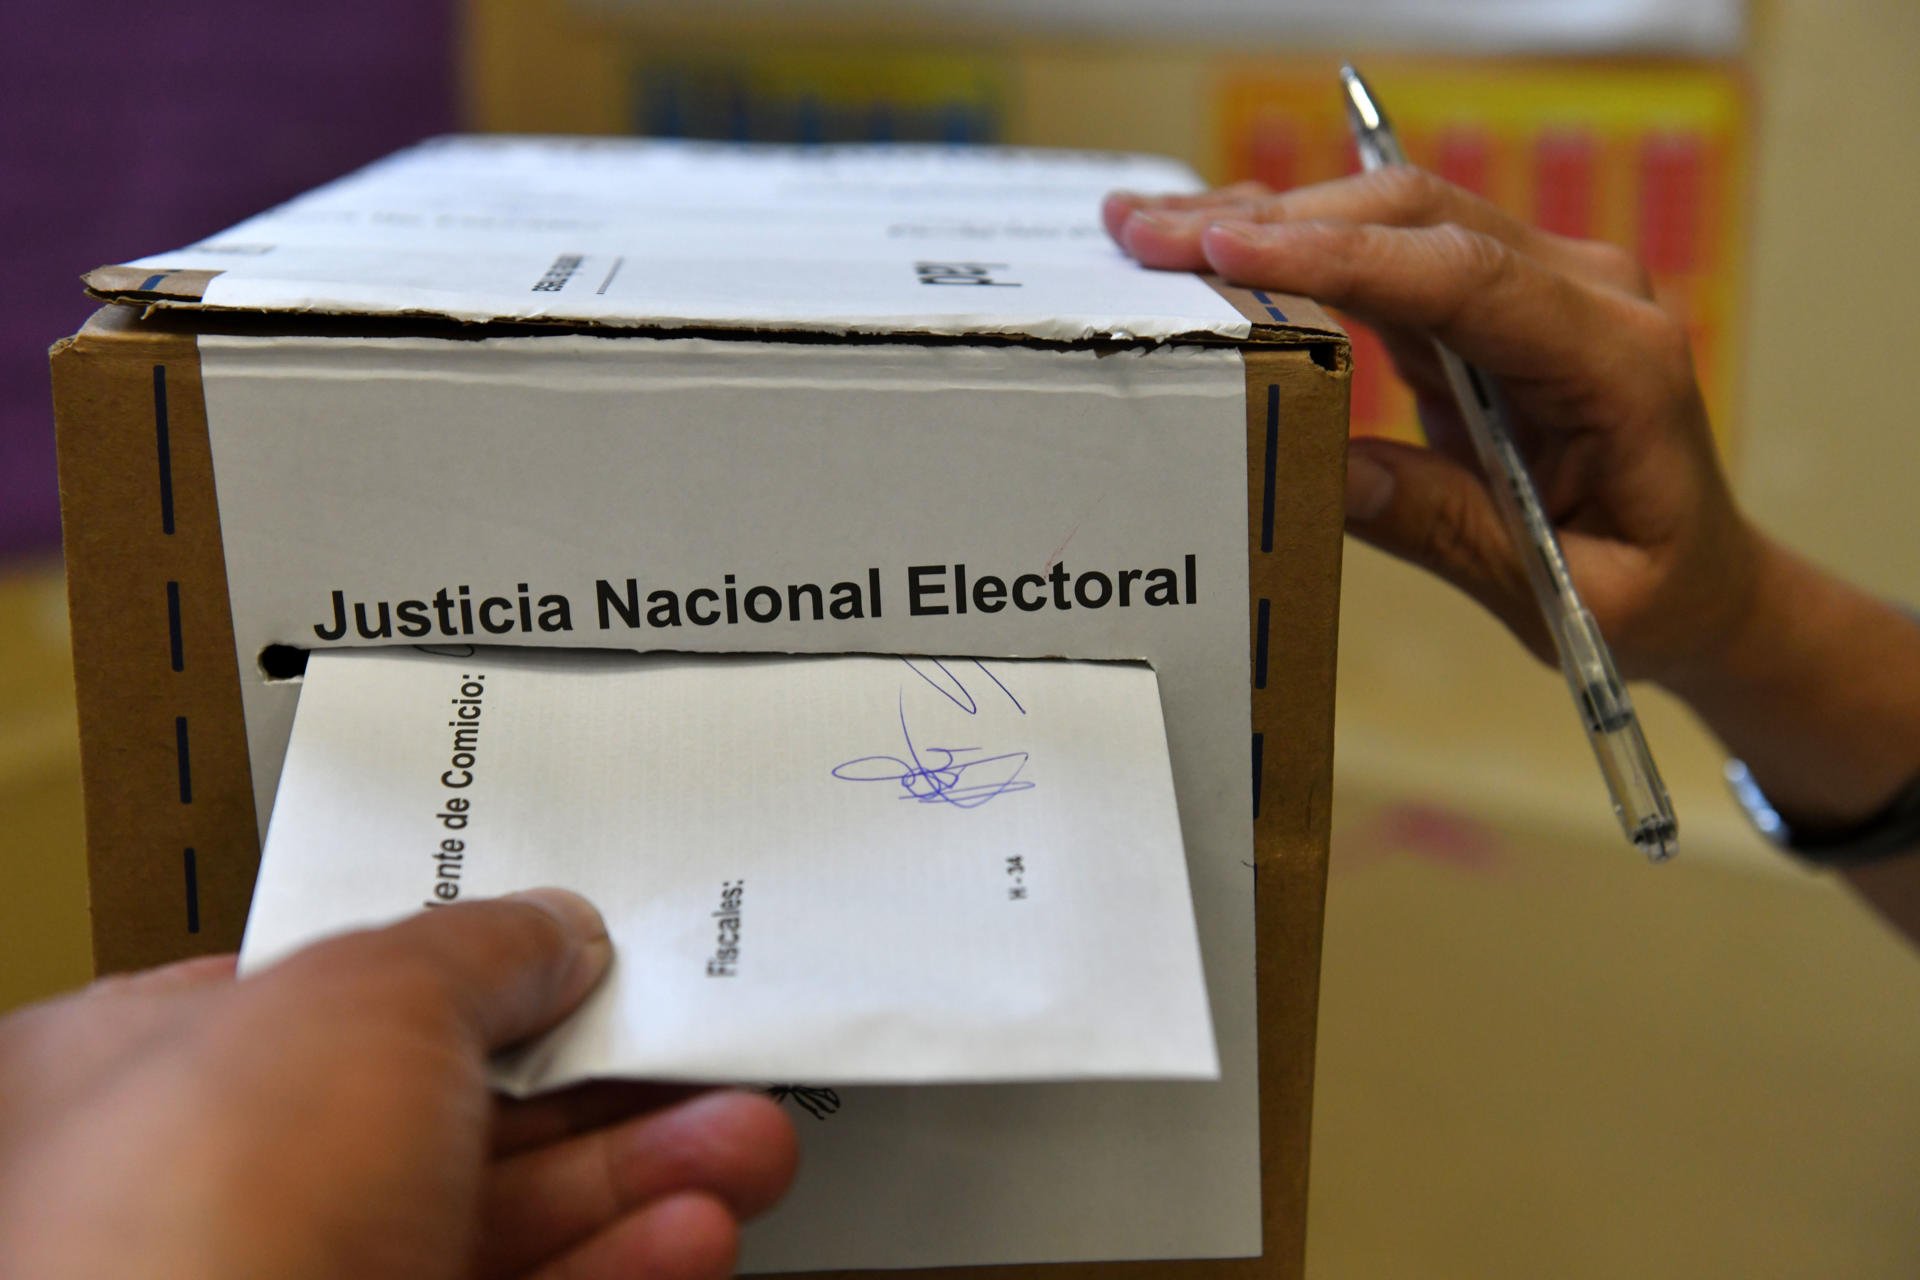 Participación en las elecciones argentinas es la más baja desde la vuelta a la democracia